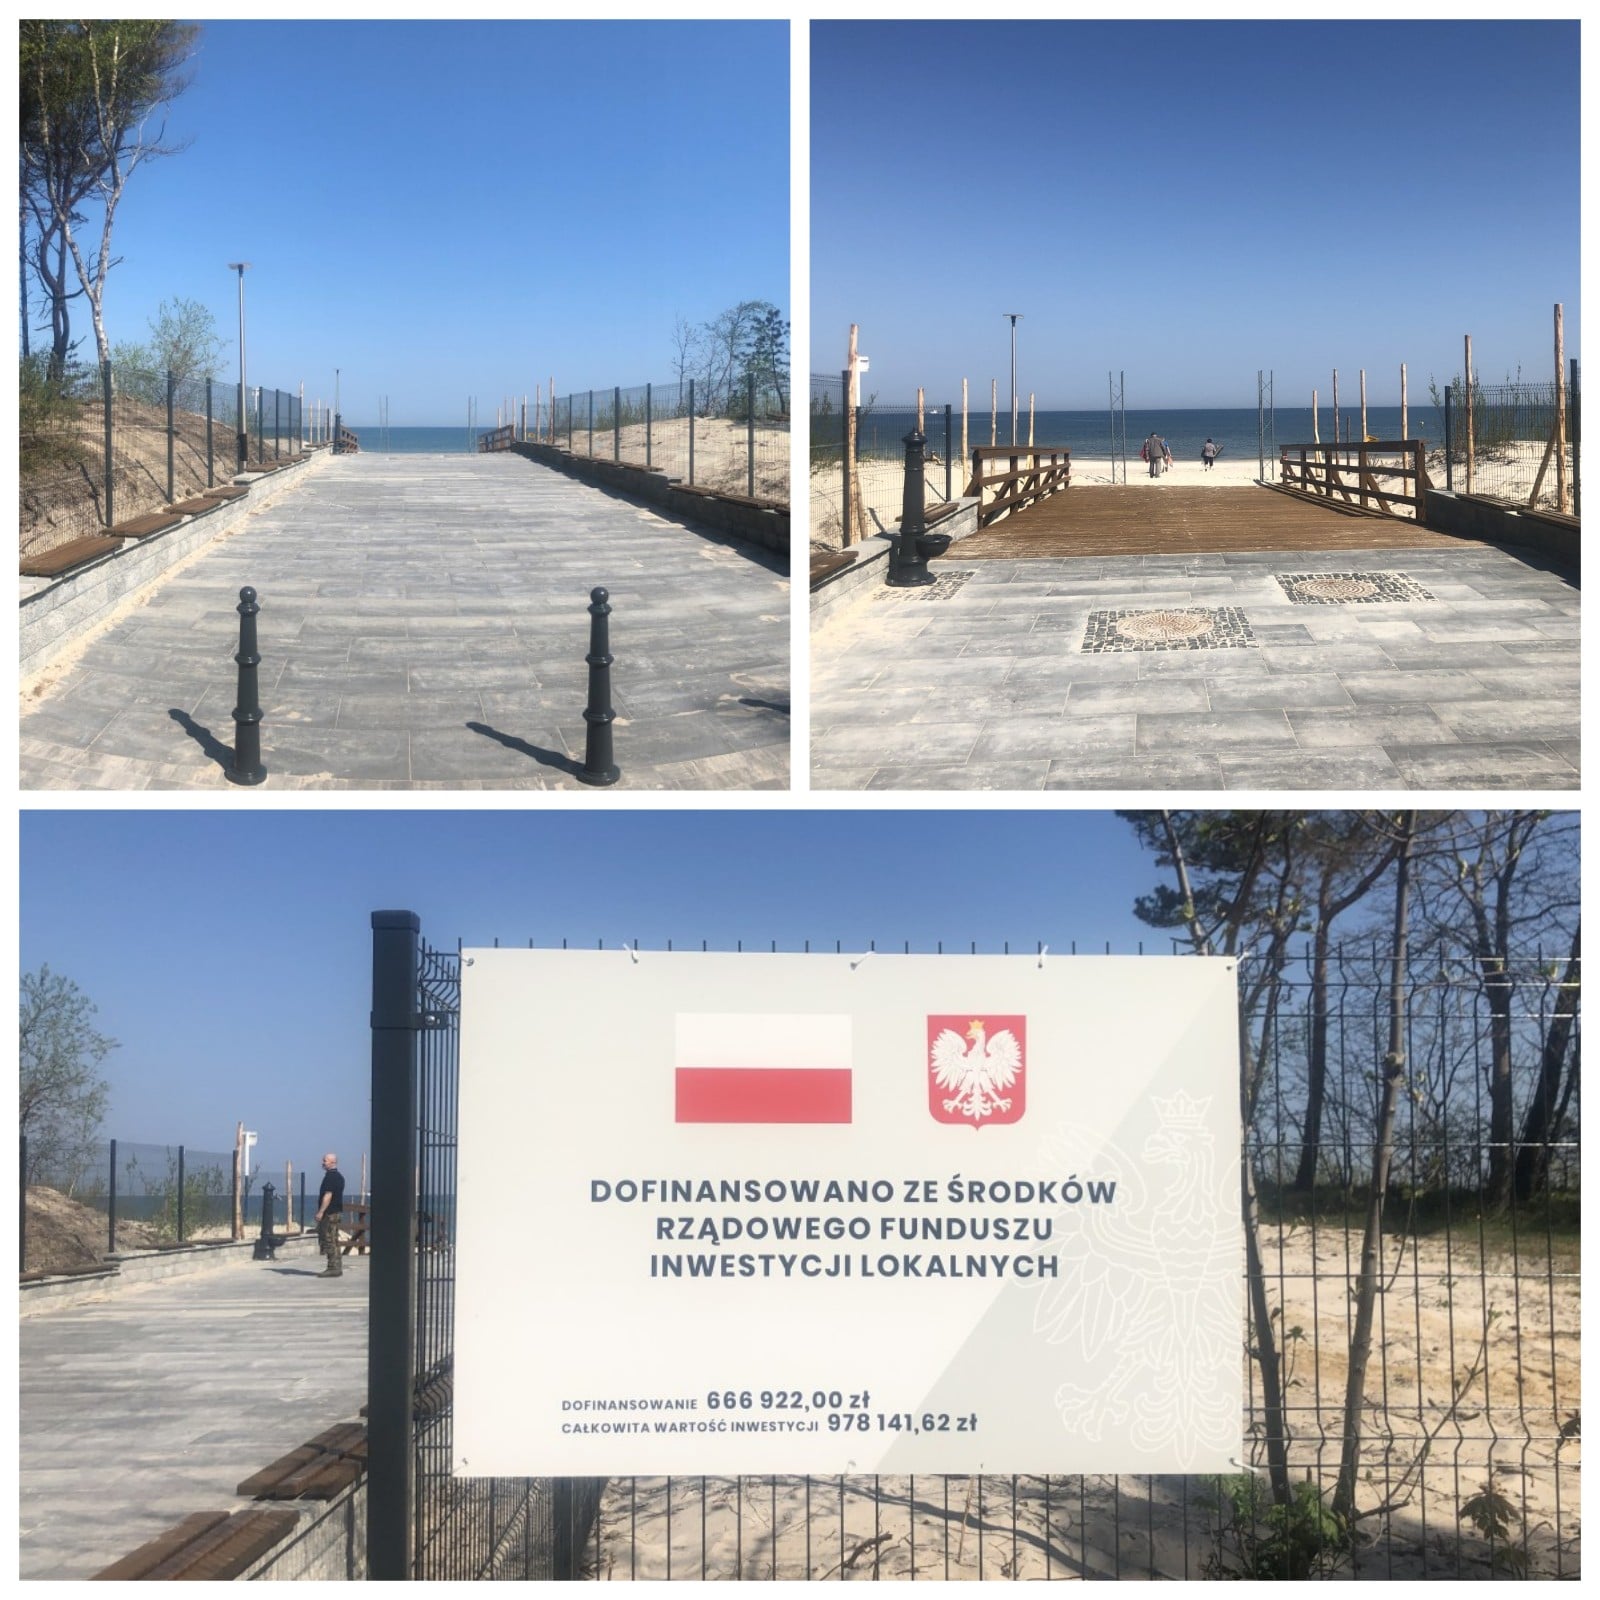 Przebudowa zejścia i dojścia do zejścia na plażę nr 3 w Łebie finansowana ze środków Rządowego Funduszu Inwestycji Lokalnych